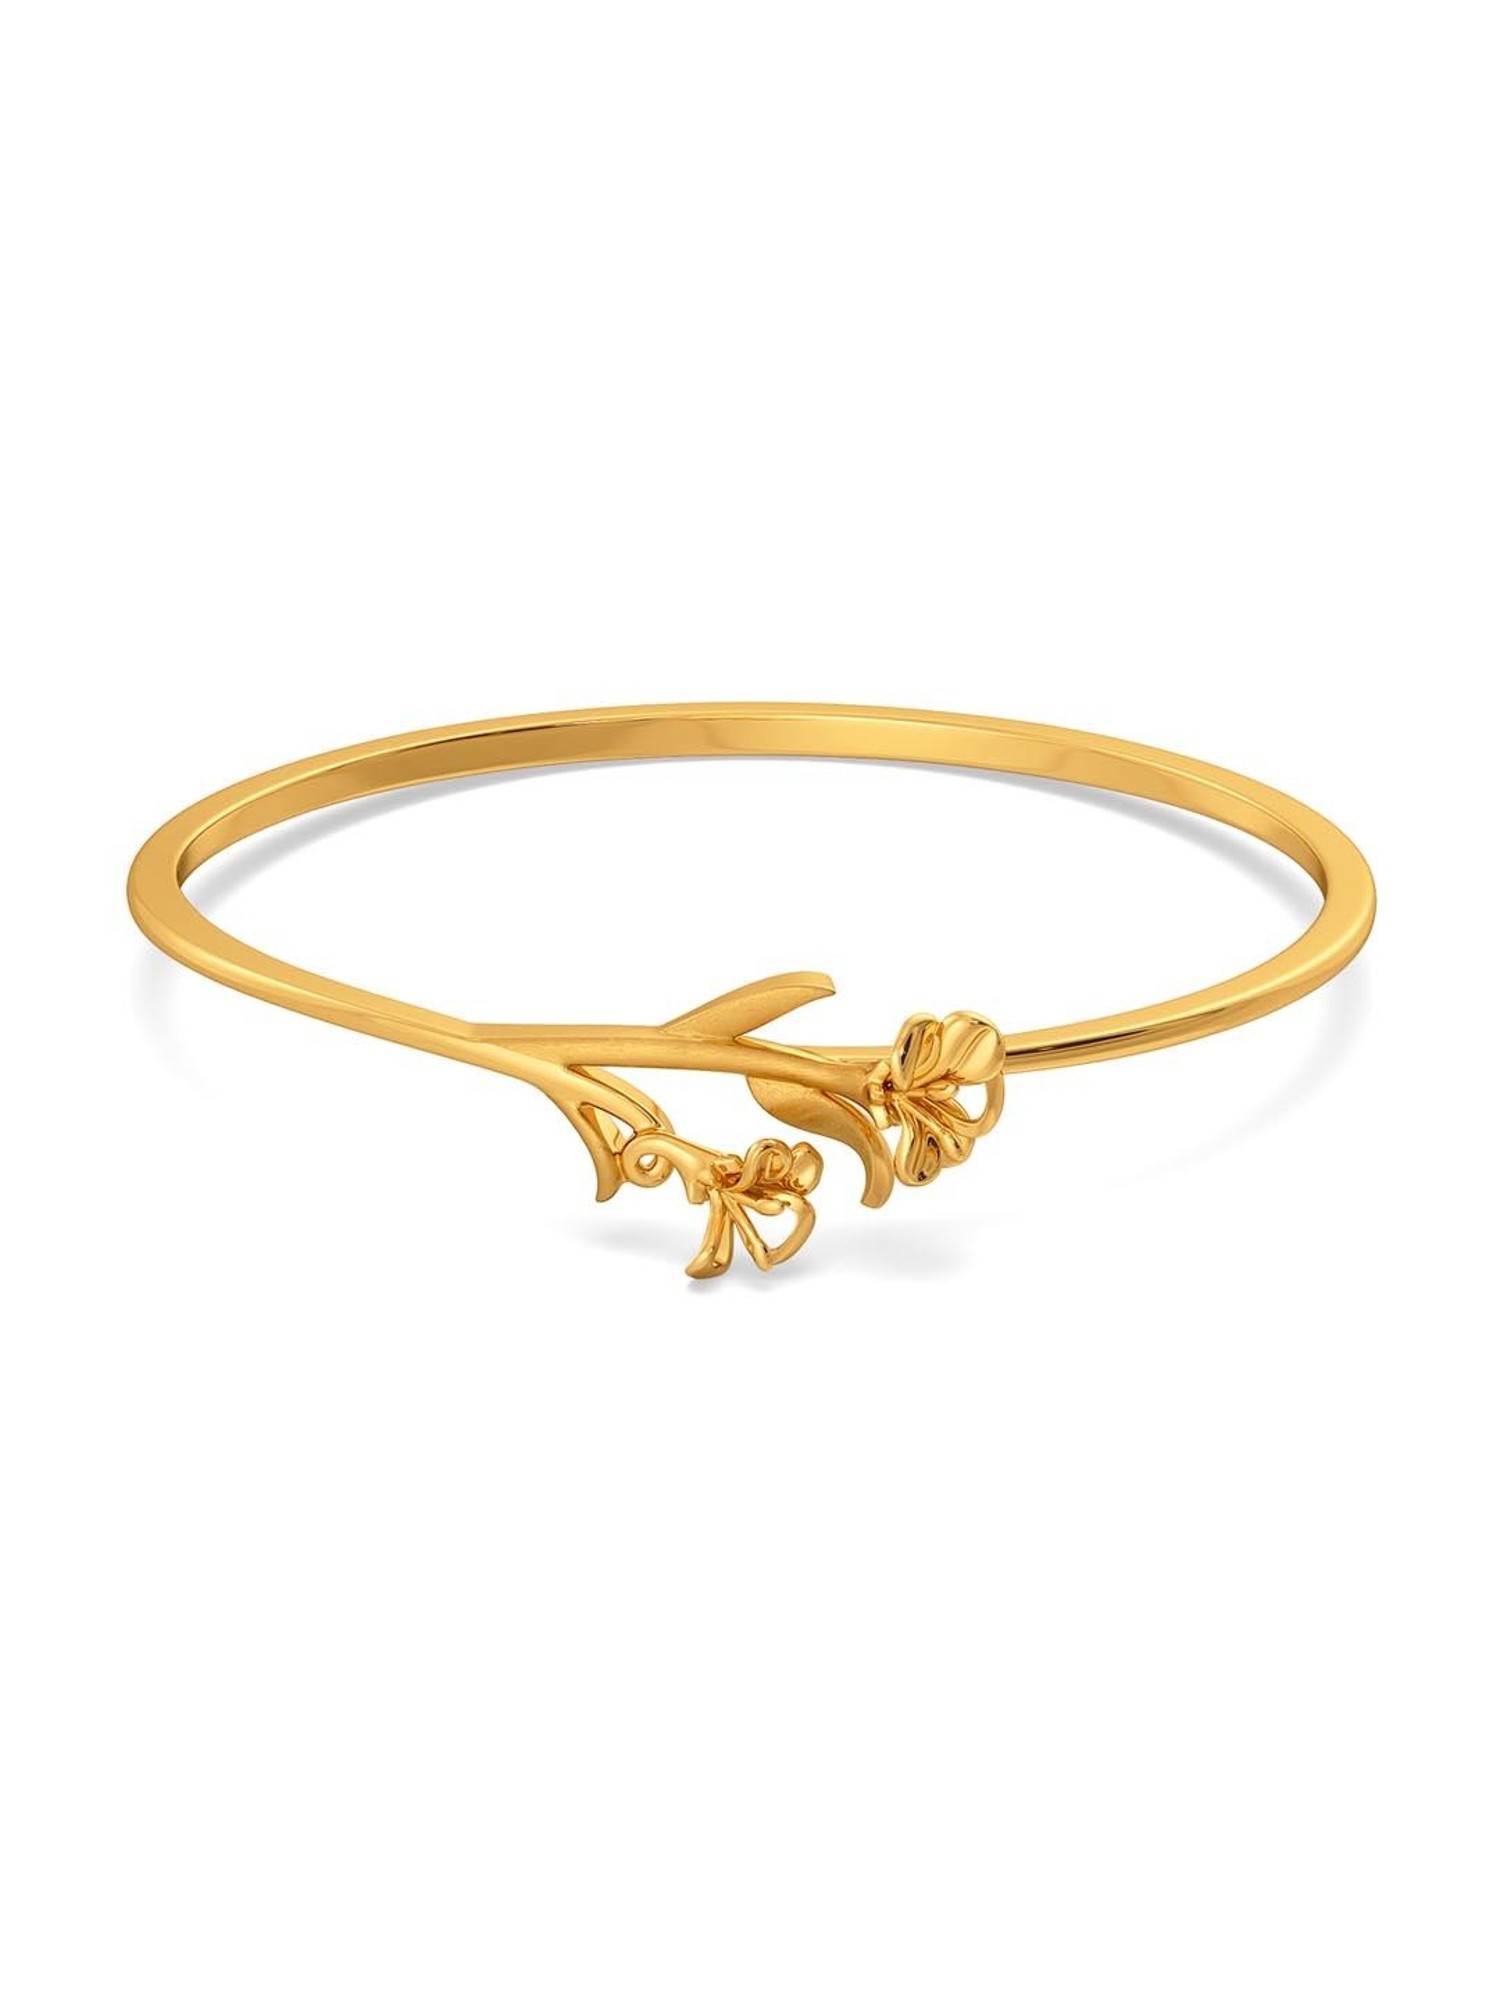 GRT Gold Bangles Dailywear Fancy wear Single kada Collections from 13 grams  | Tnagar GRT jewellery - YouTube